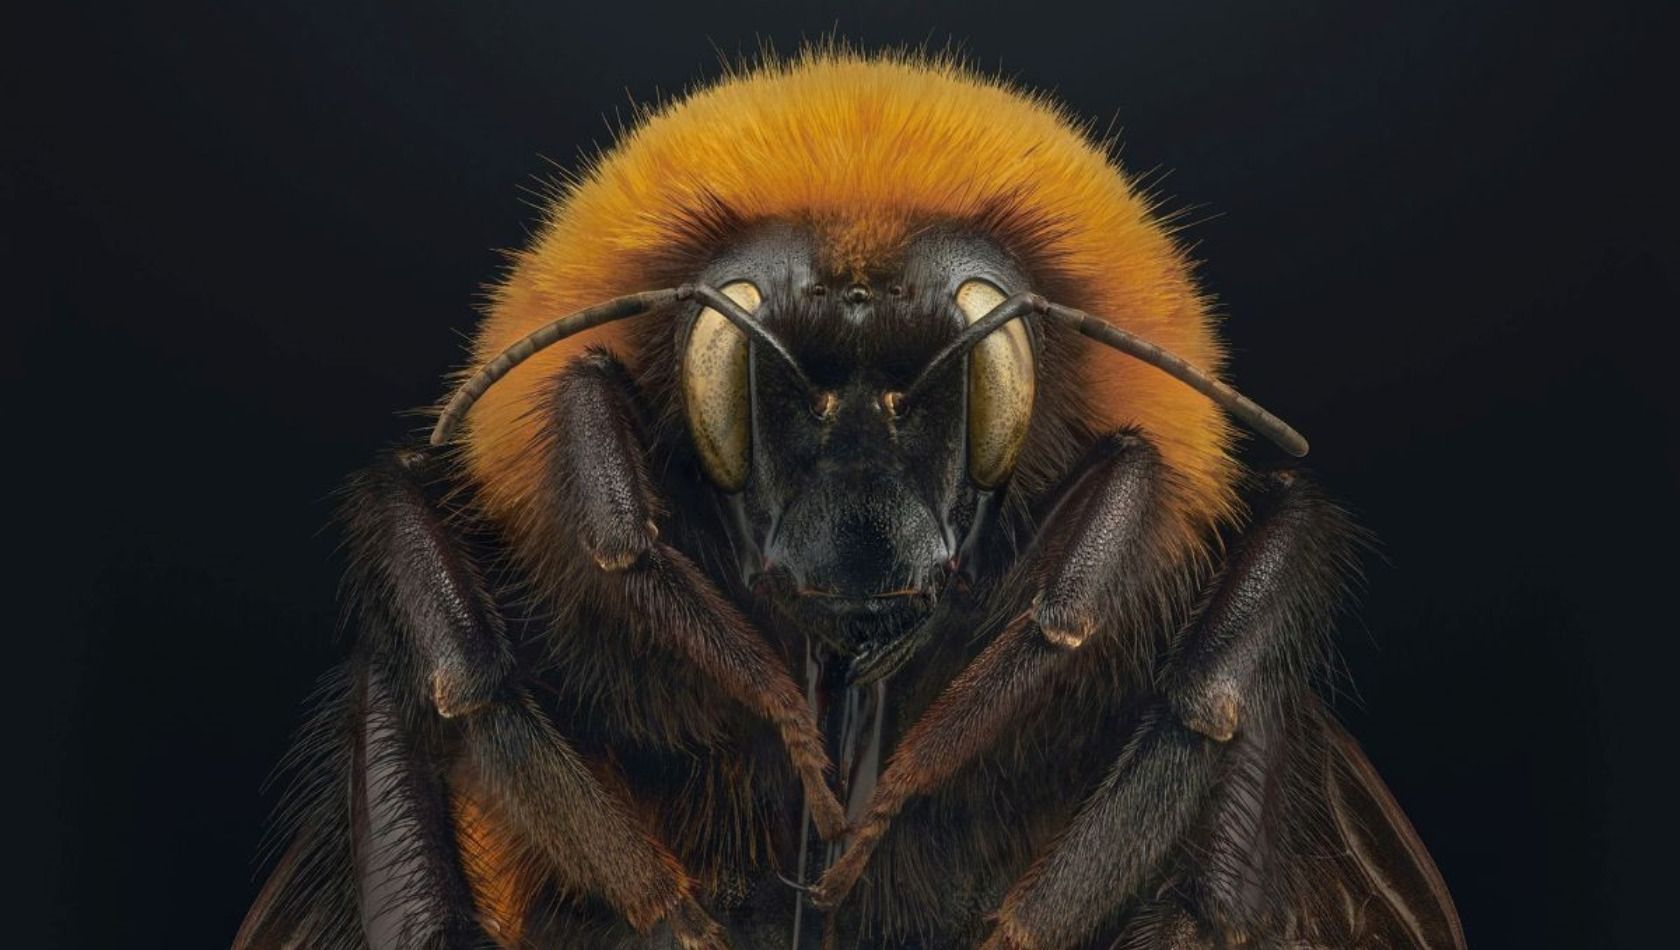 Patagonische Riesen-Hummel Giant Patagonian bumblebee Bombus dahlbomii von Levon Biss